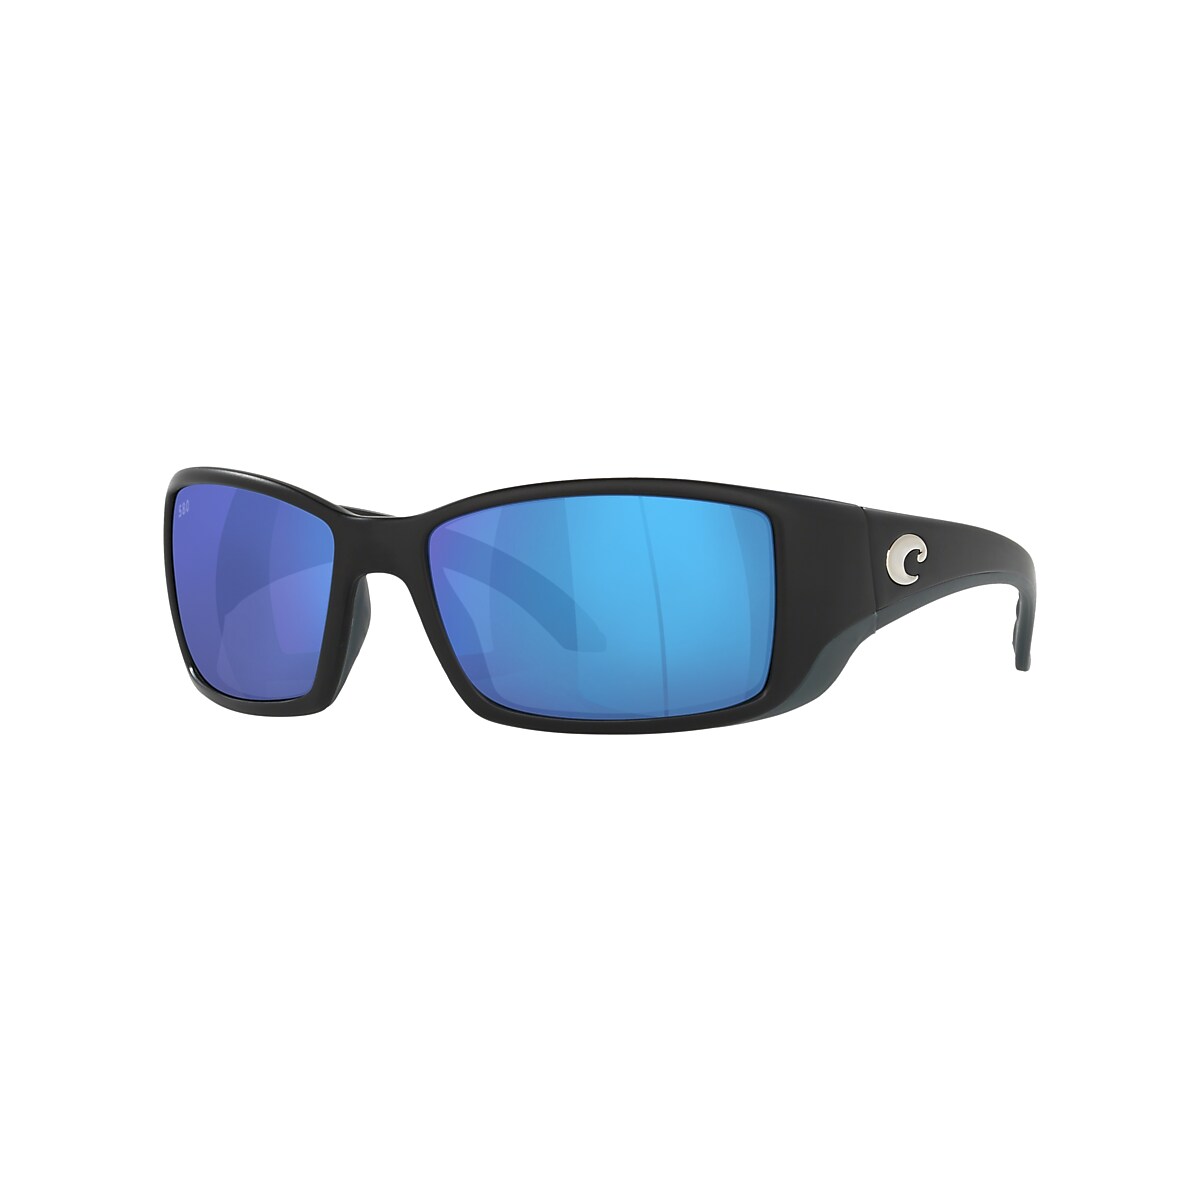 Costa Del Mar Blackfin Sunglasses 